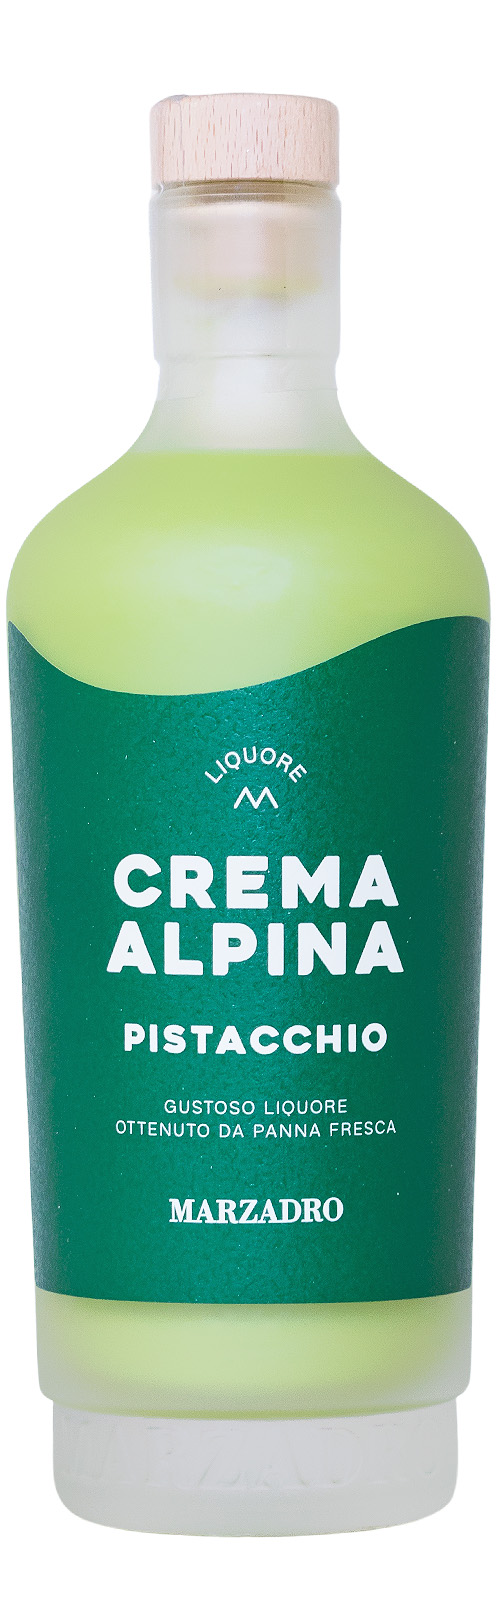 Marzadro Crema Alpina Pistacchio - 0,7L 17% vol